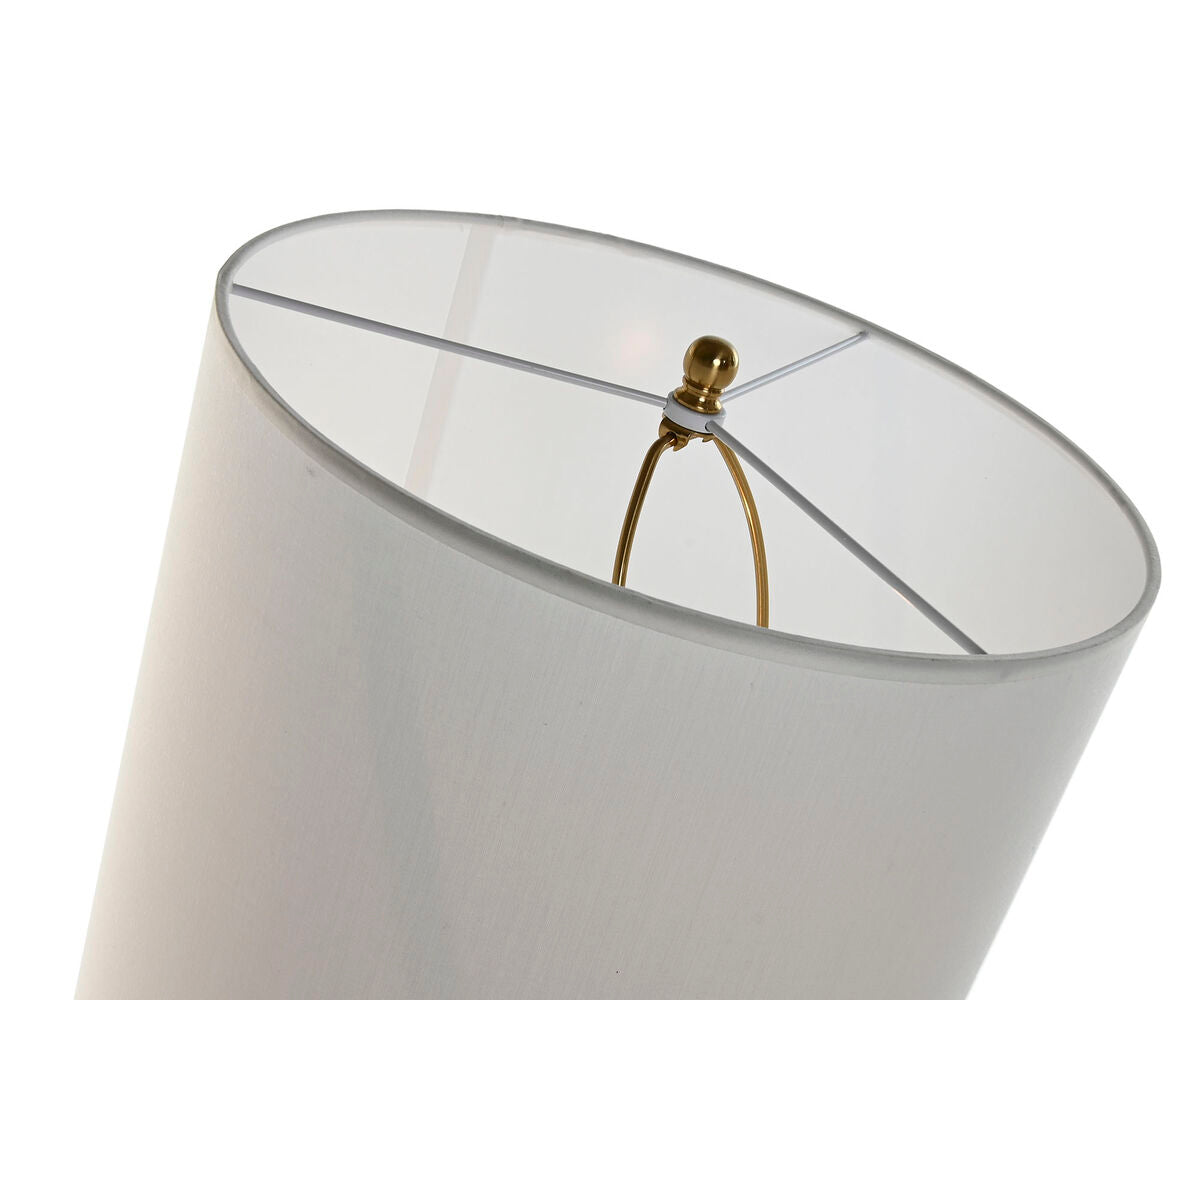 Tischlampe Home ESPRIT Weiß Gold Eisen 50 W 220 V 35 x 35 x 78 cm